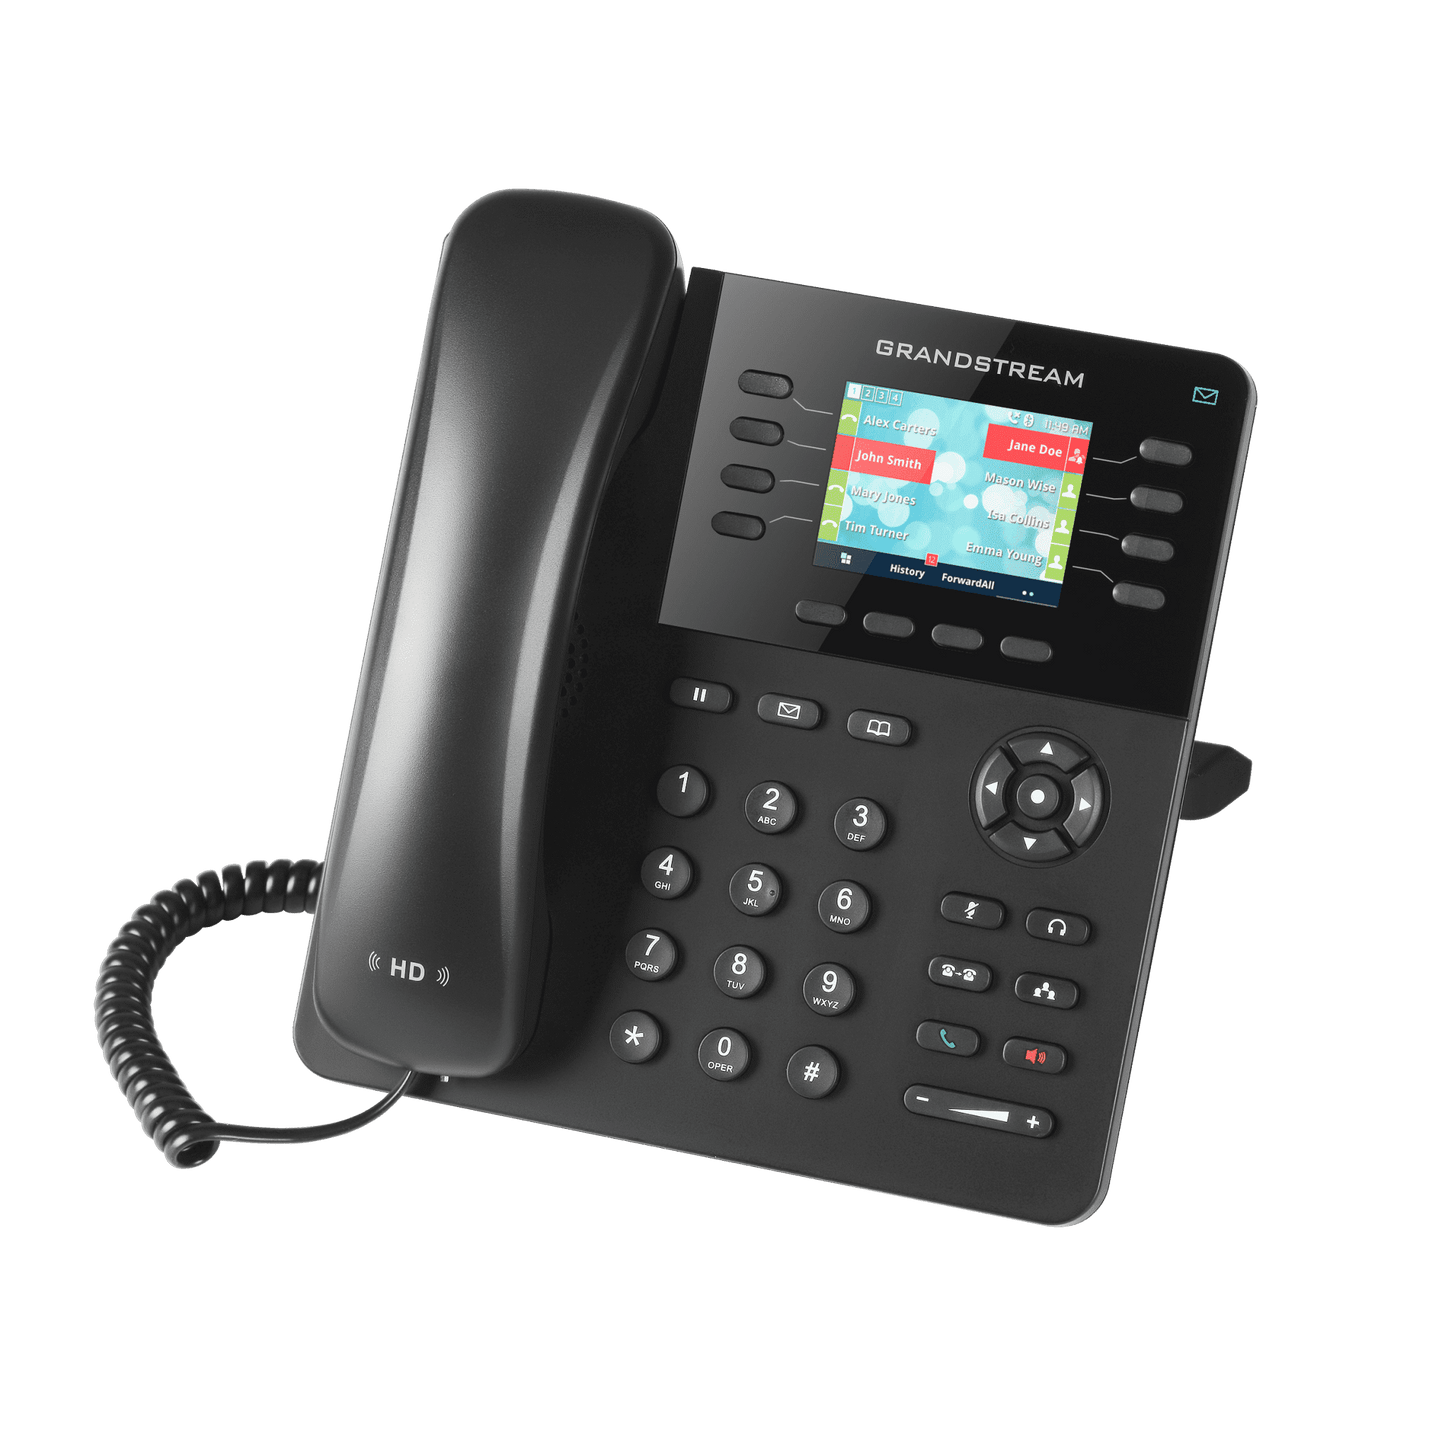 GXP2135 - Premium  from Vanilla Telecoms Ltd. - Just €99.00! Shop now at Vanilla Telecoms Ltd.